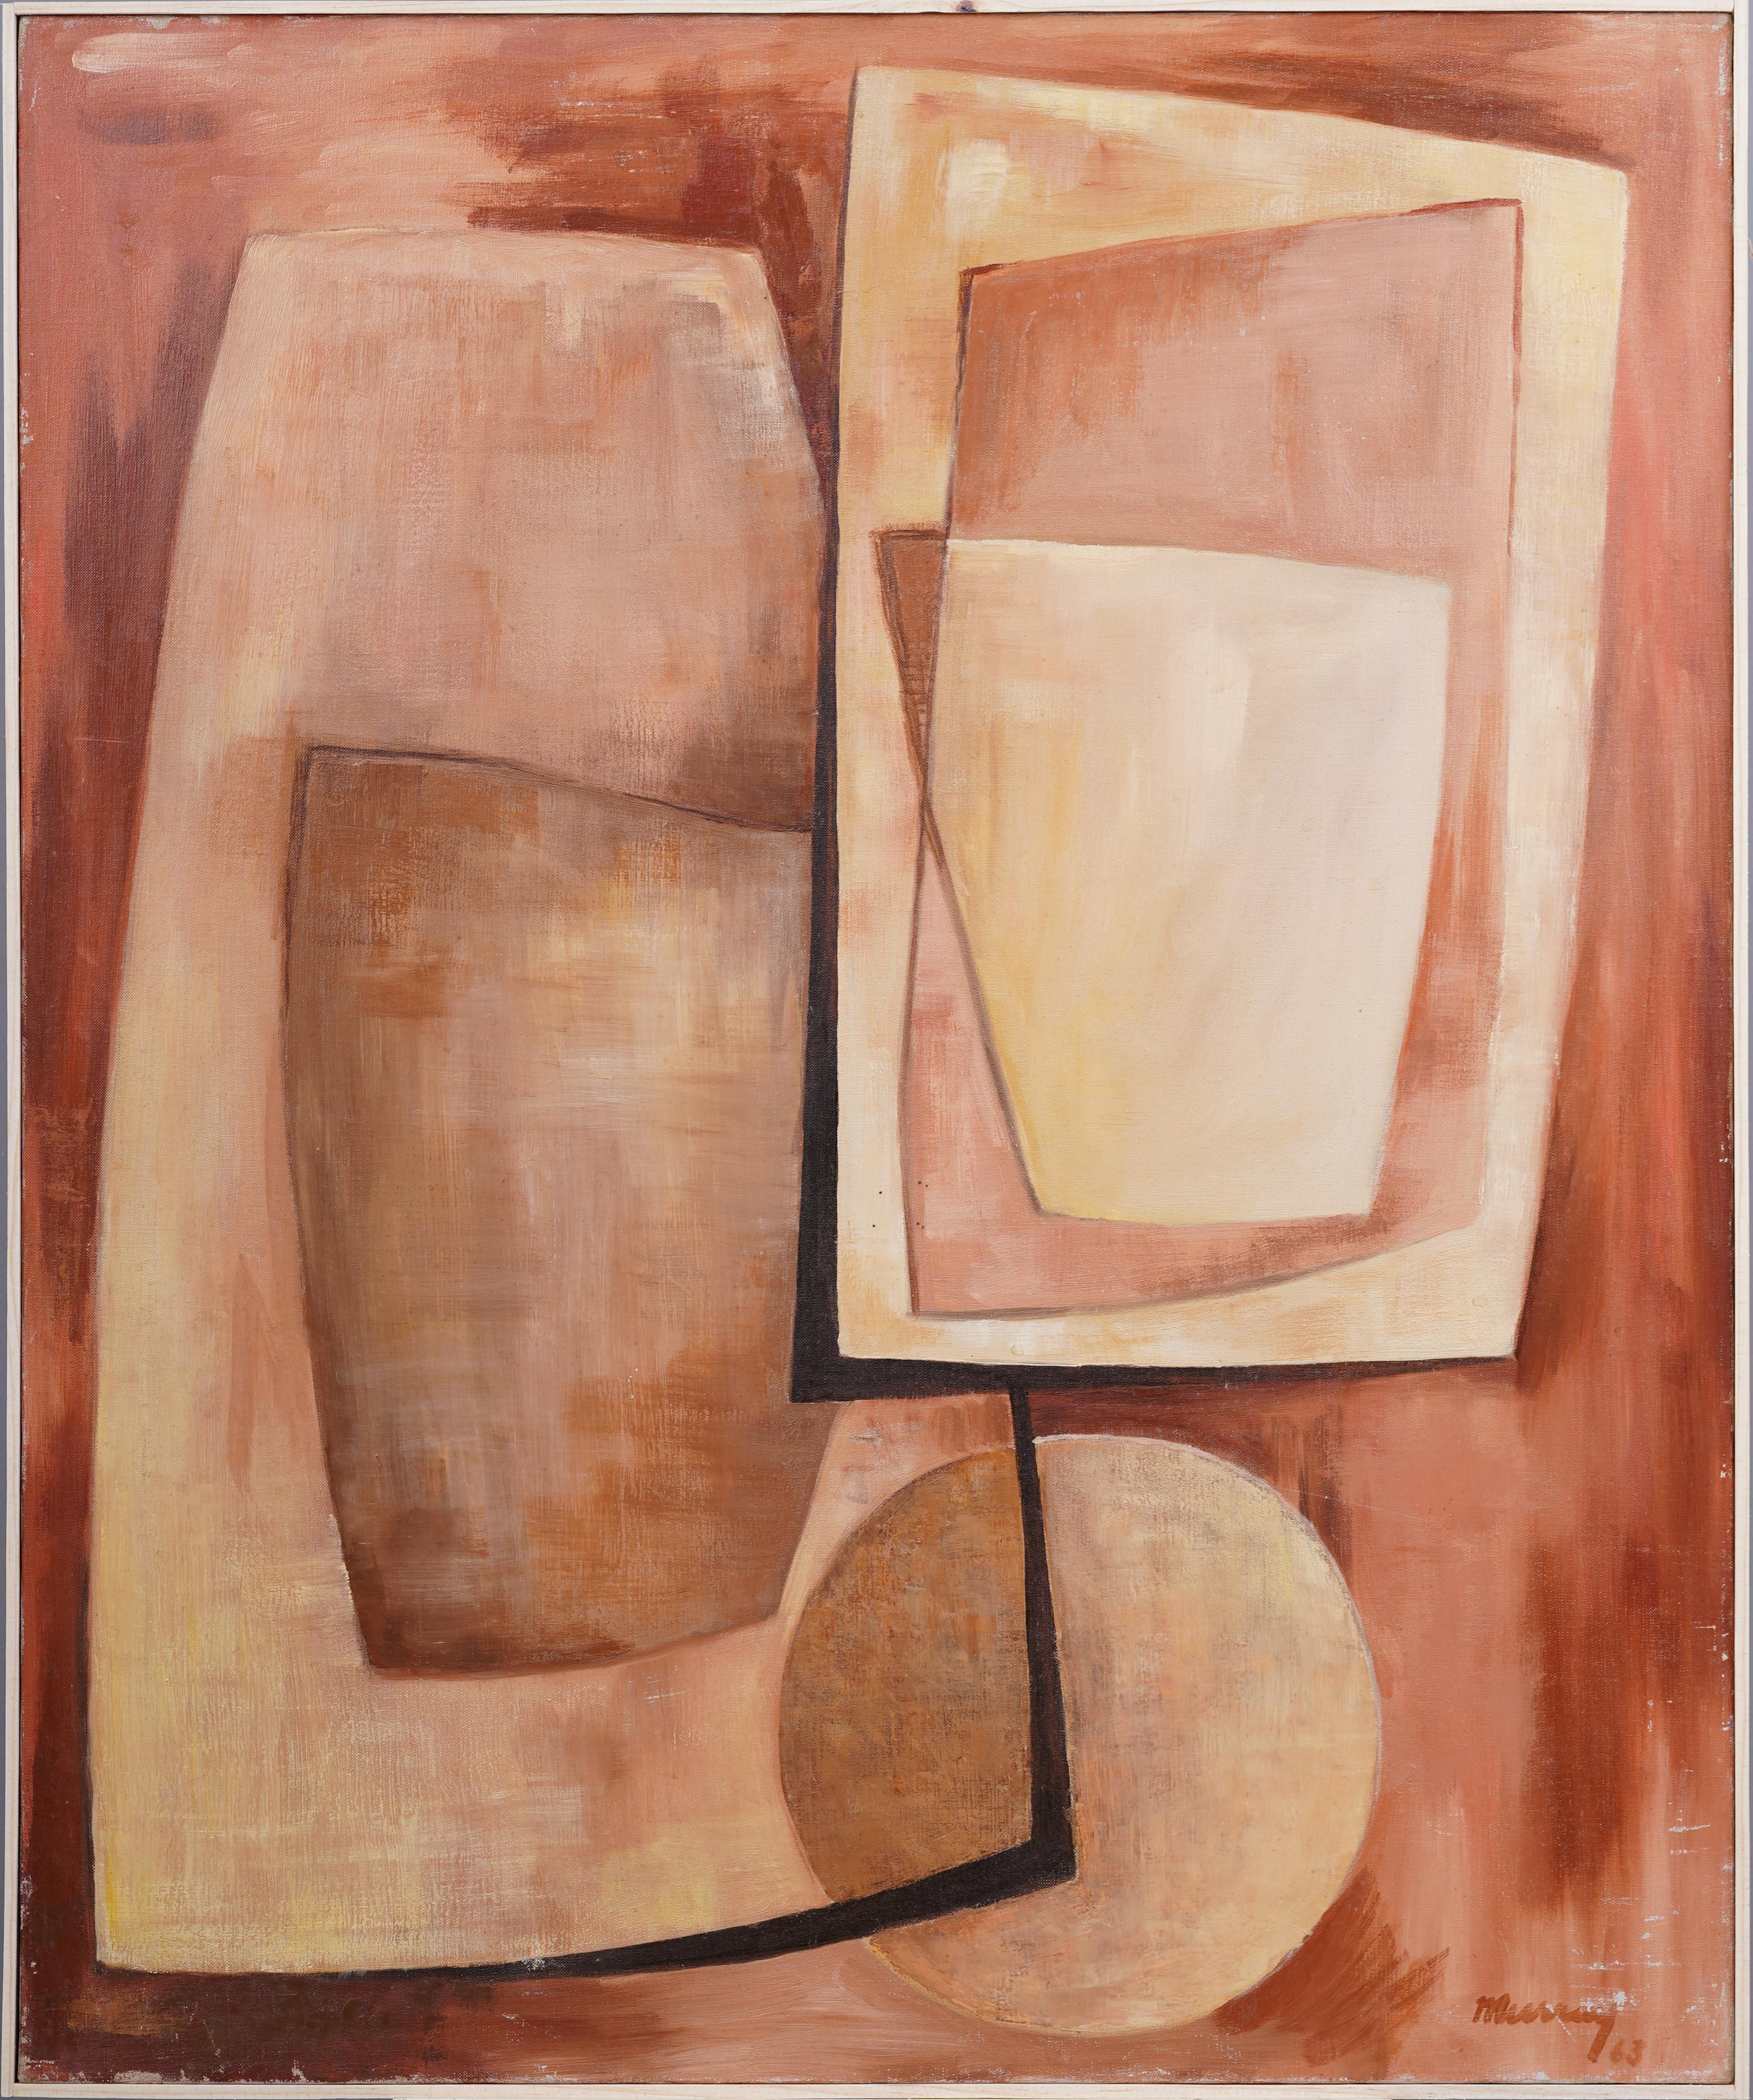 Abstract Painting Unknown - Ancienne peinture à l'huile moderniste américaine cubiste abstraite encadrée, signée